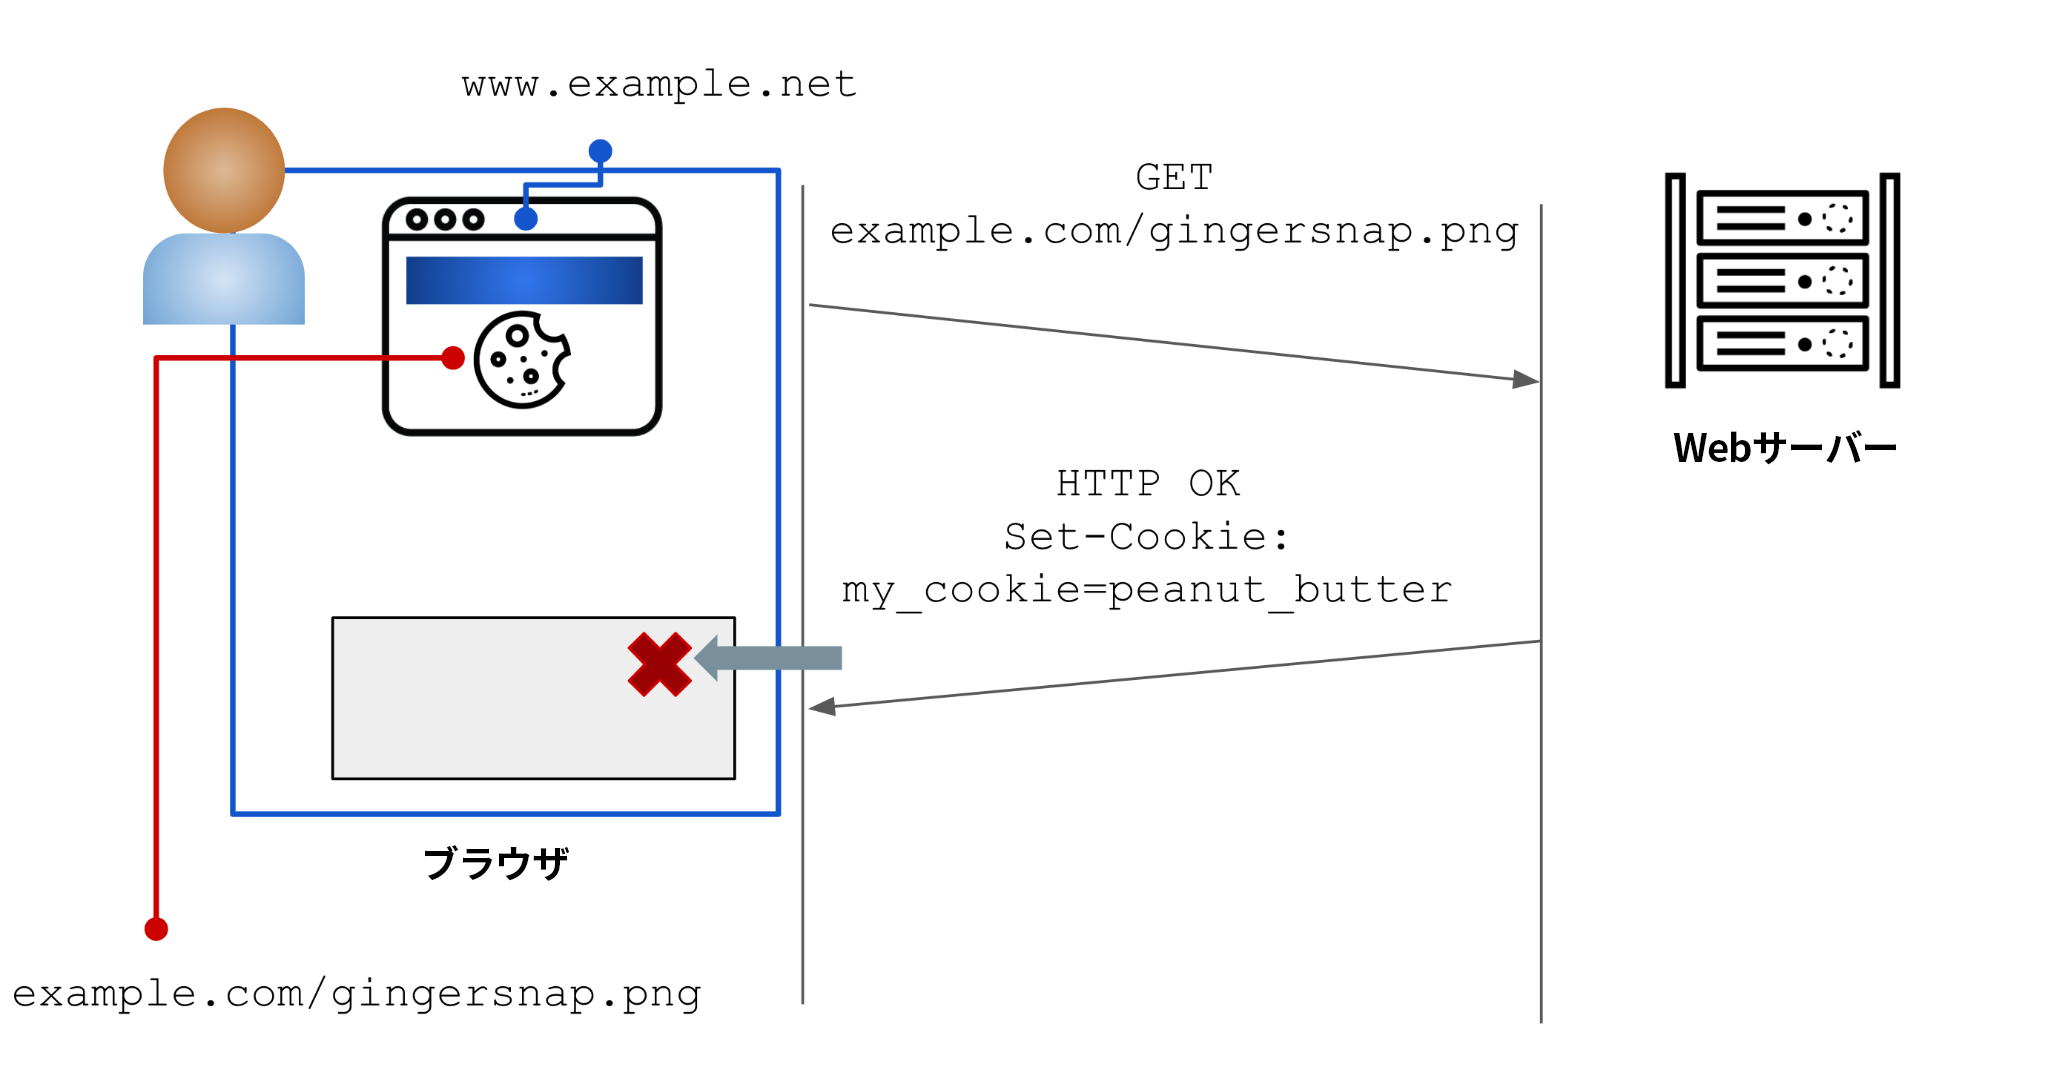 この図のユーザーはwww[.]example[.]comを閲覧している。HTTPのGETリクエストがサイトのWebサーバーに送信されている。ドメイン所有者は応答としてユーザーにCookieを送信するように設定している。この例では、「my_cookies」というCookieの値が「peanut_butter」に設定されている。この例のユーザーがこのドメインの他のページを閲覧すると、このユーザーが送信するメッセージには「peanut_butter」というCookieが含まれ、サイト上での行動を追跡できるようになる。